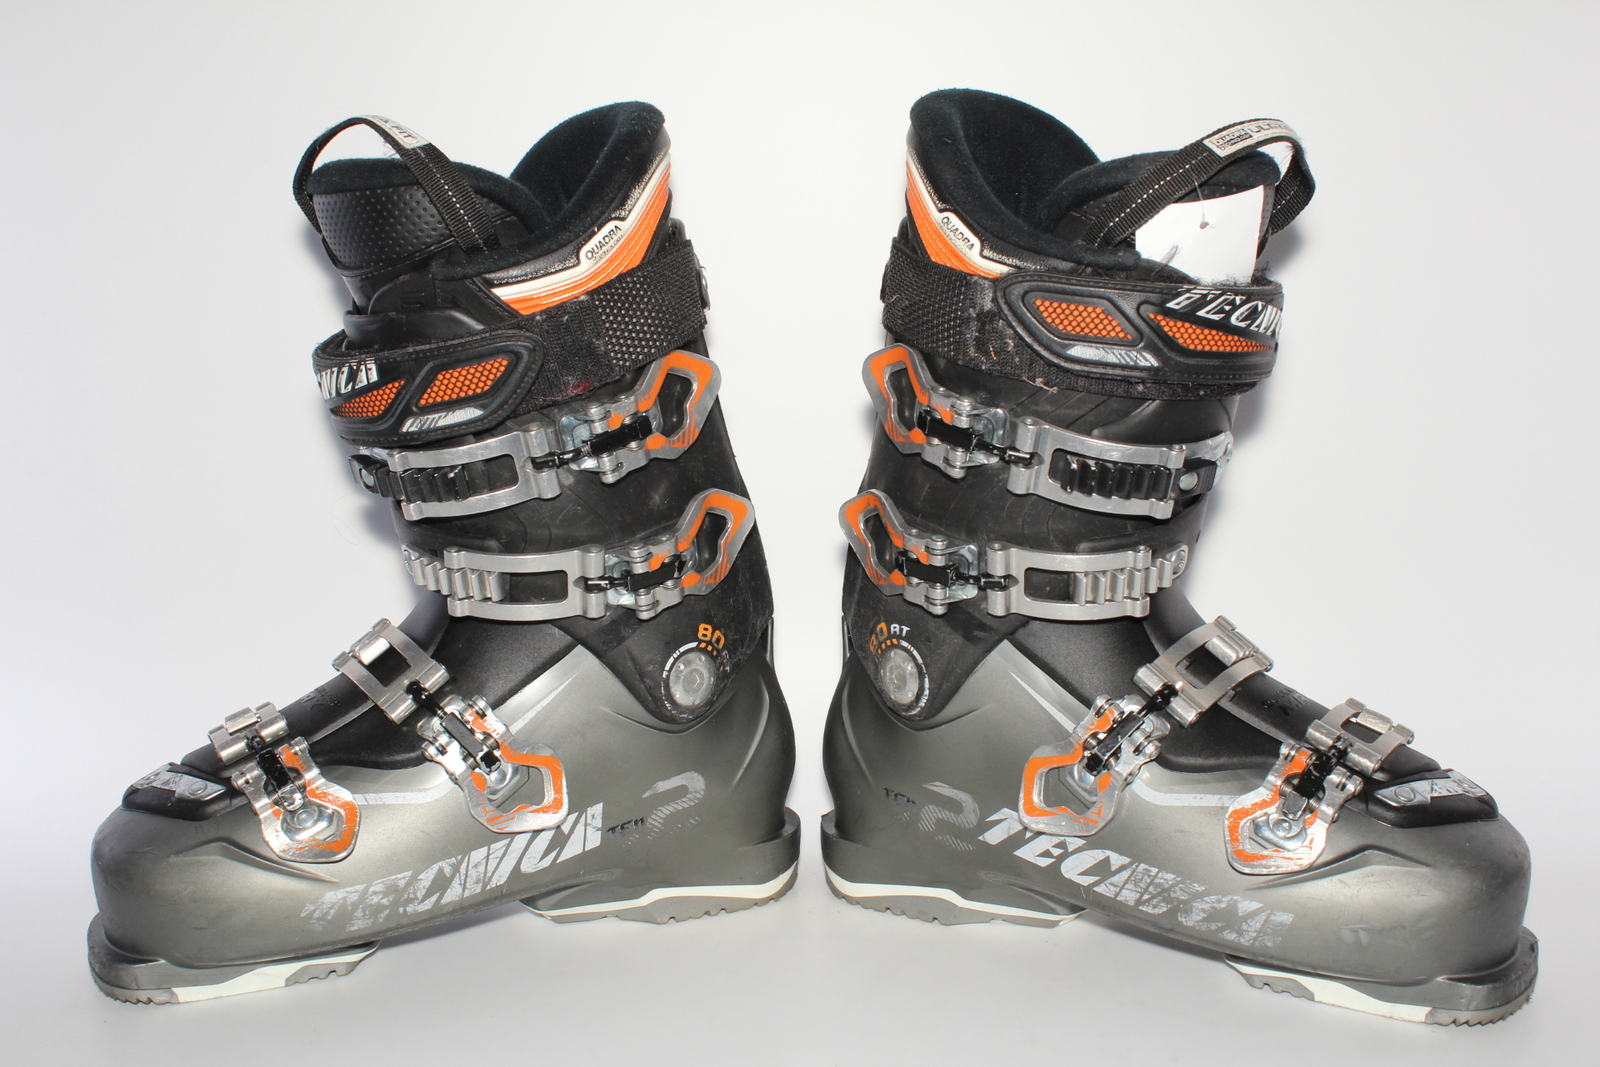 Lyžařské boty Tecnica Ten 2 80 RT vel. EU40.5 flexe 80